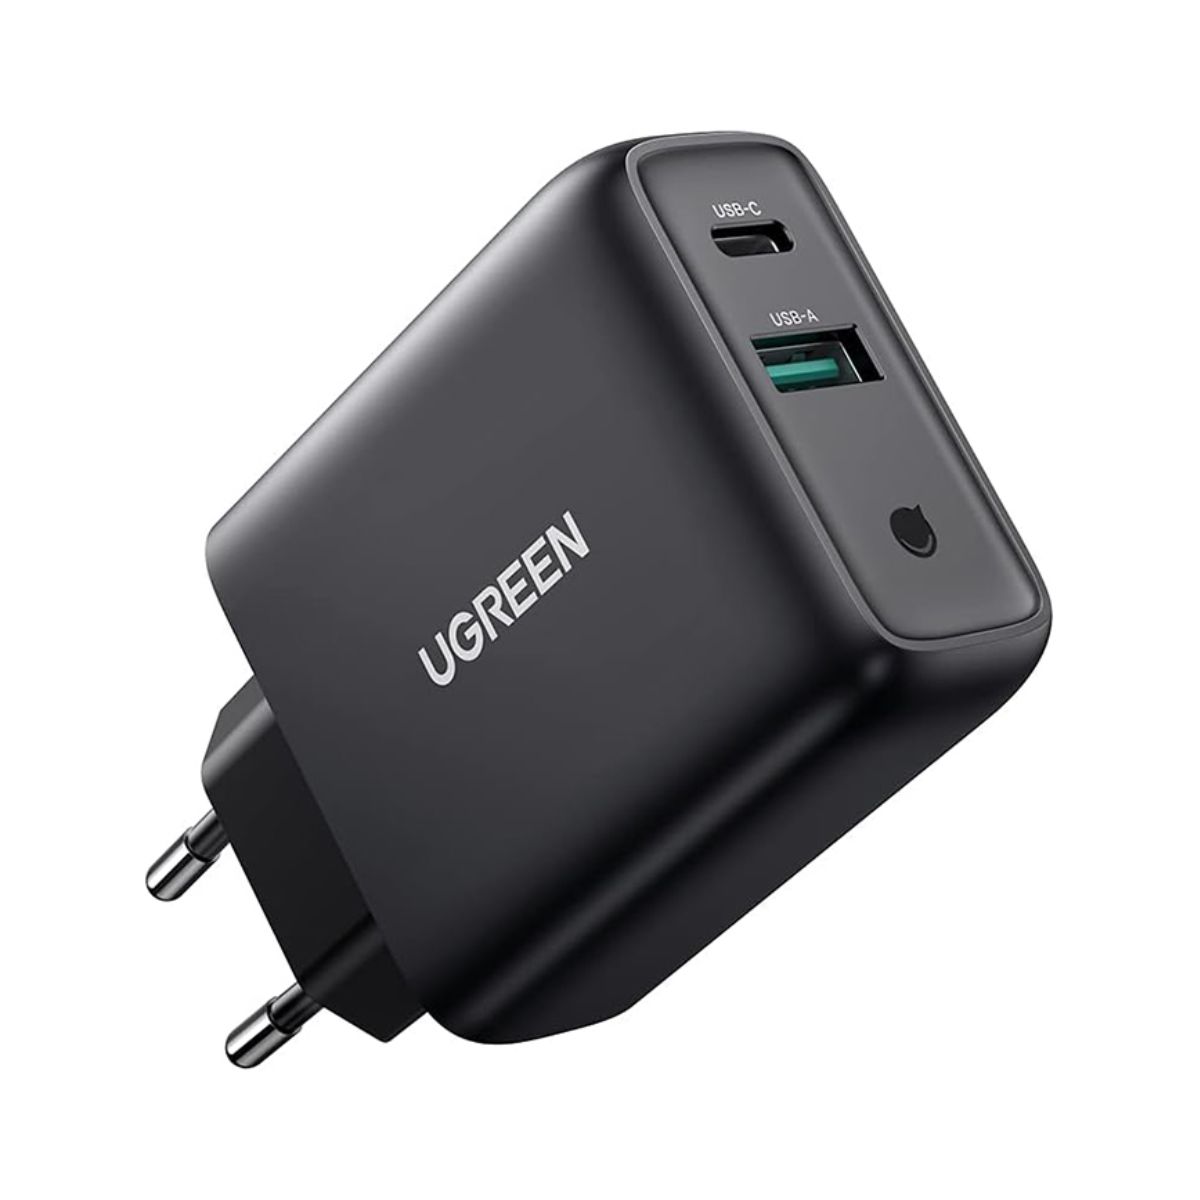 Bộ sạc nhanh Ugreen 10217 CD170 màu đen, công suất 36W, 1 cổng USB-C và 1 cổng USB-A